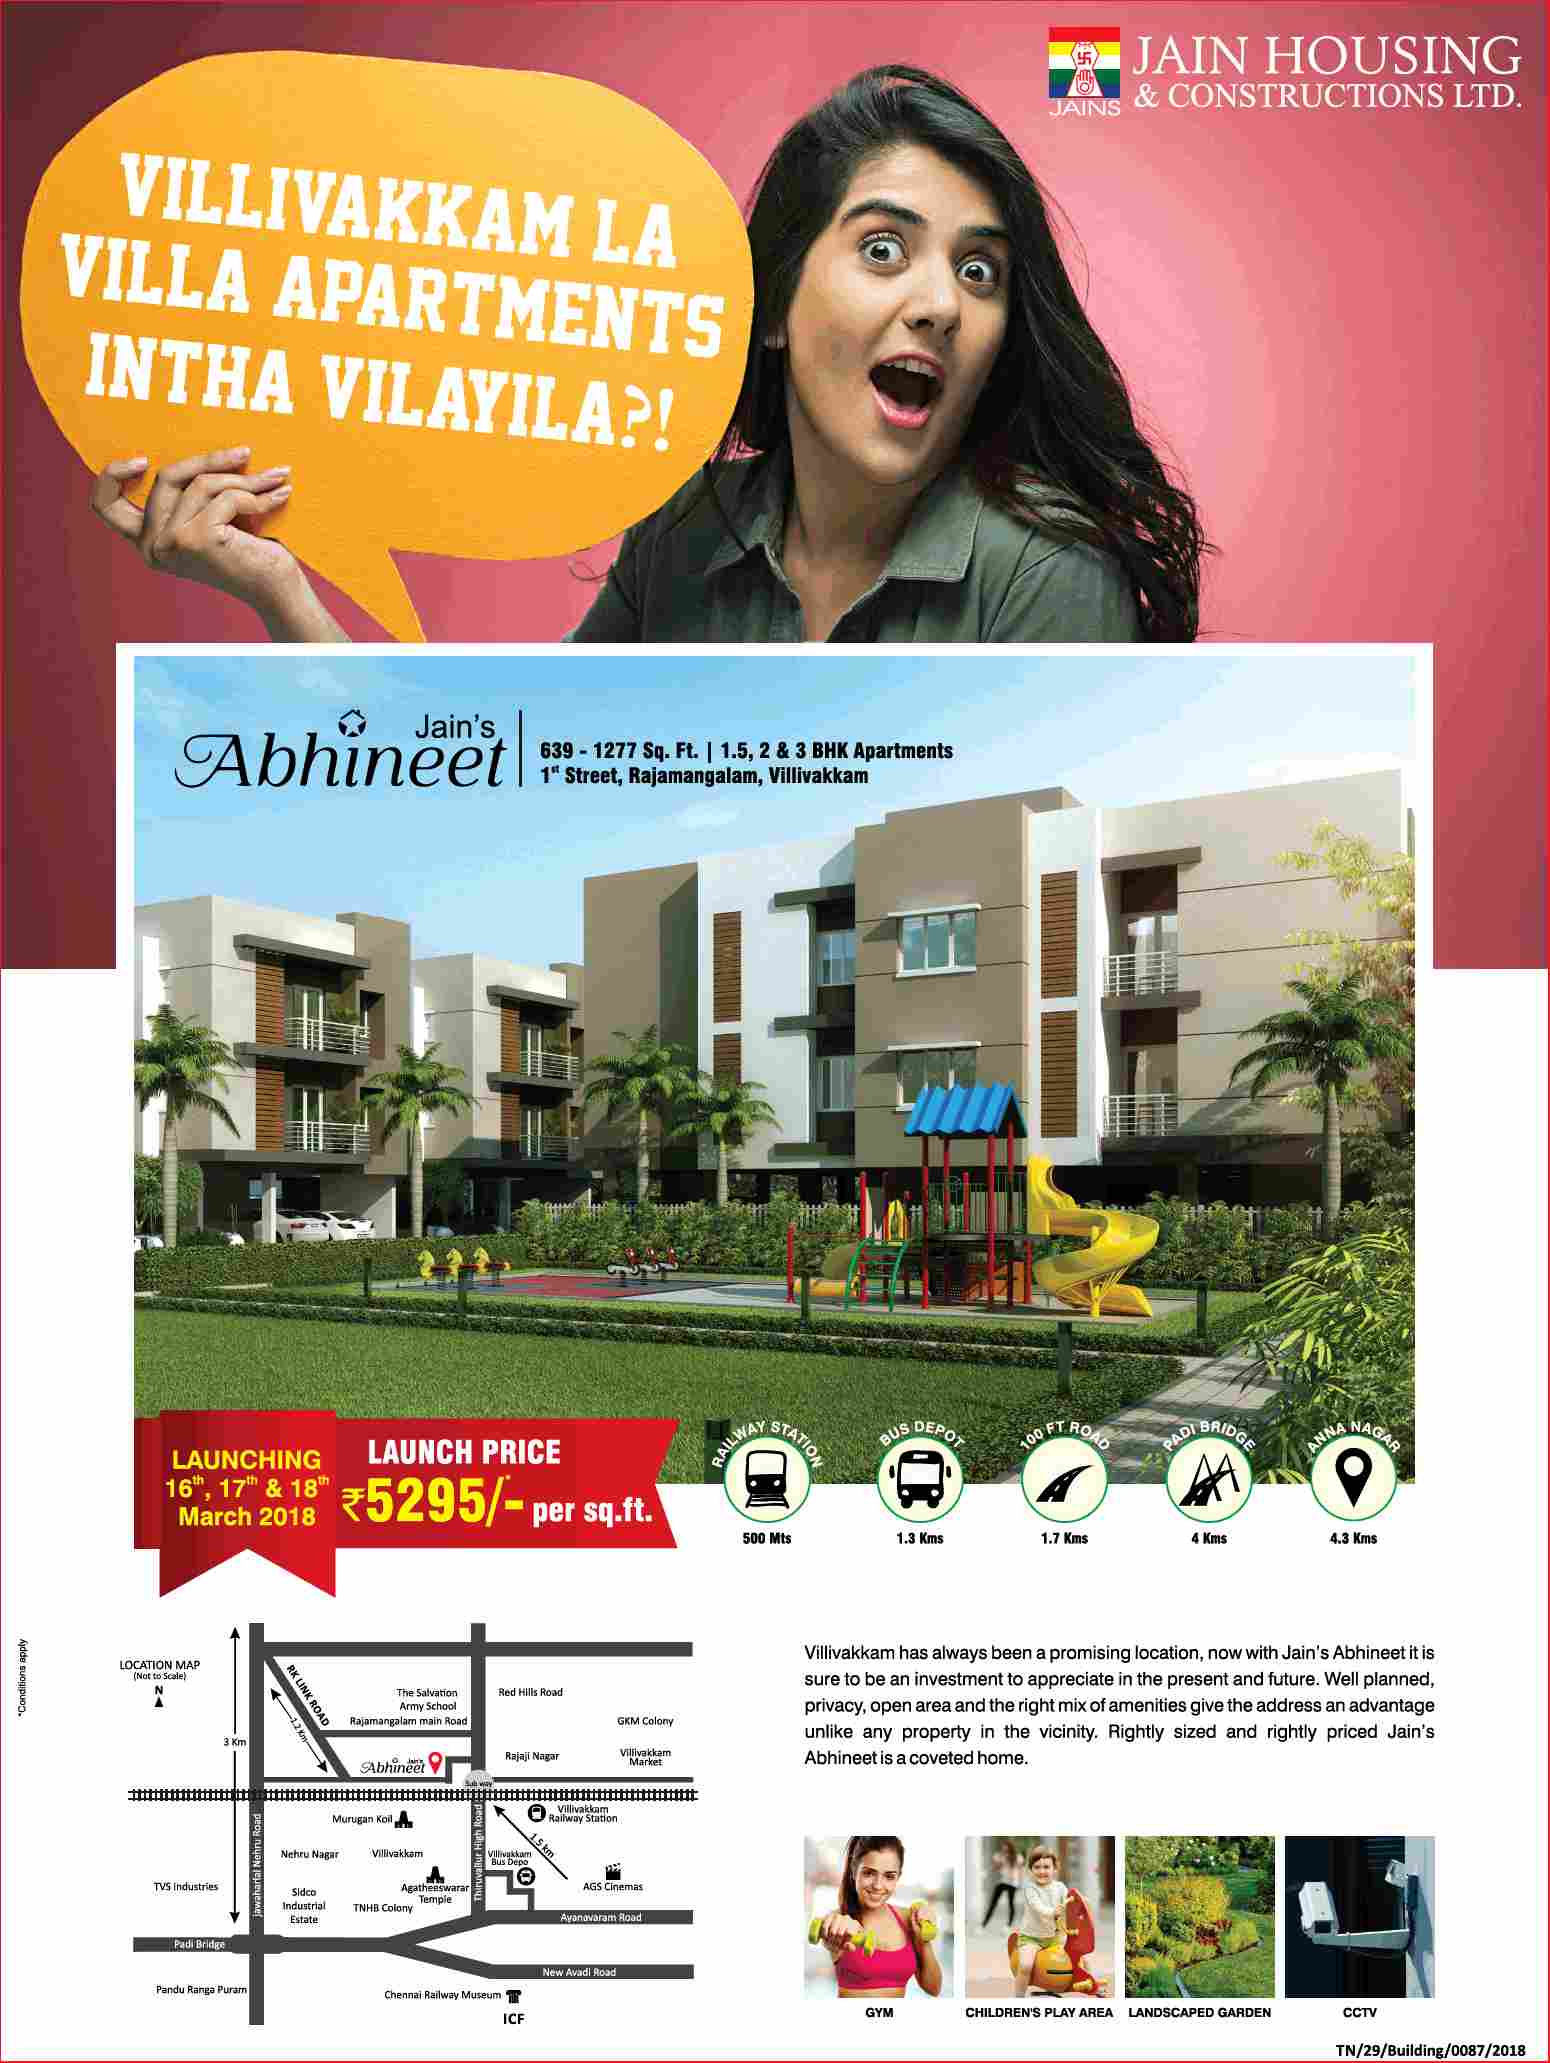 Launch price of Rs. 5295 per sq.ft. at Jain's Abhineet in Chennai Update